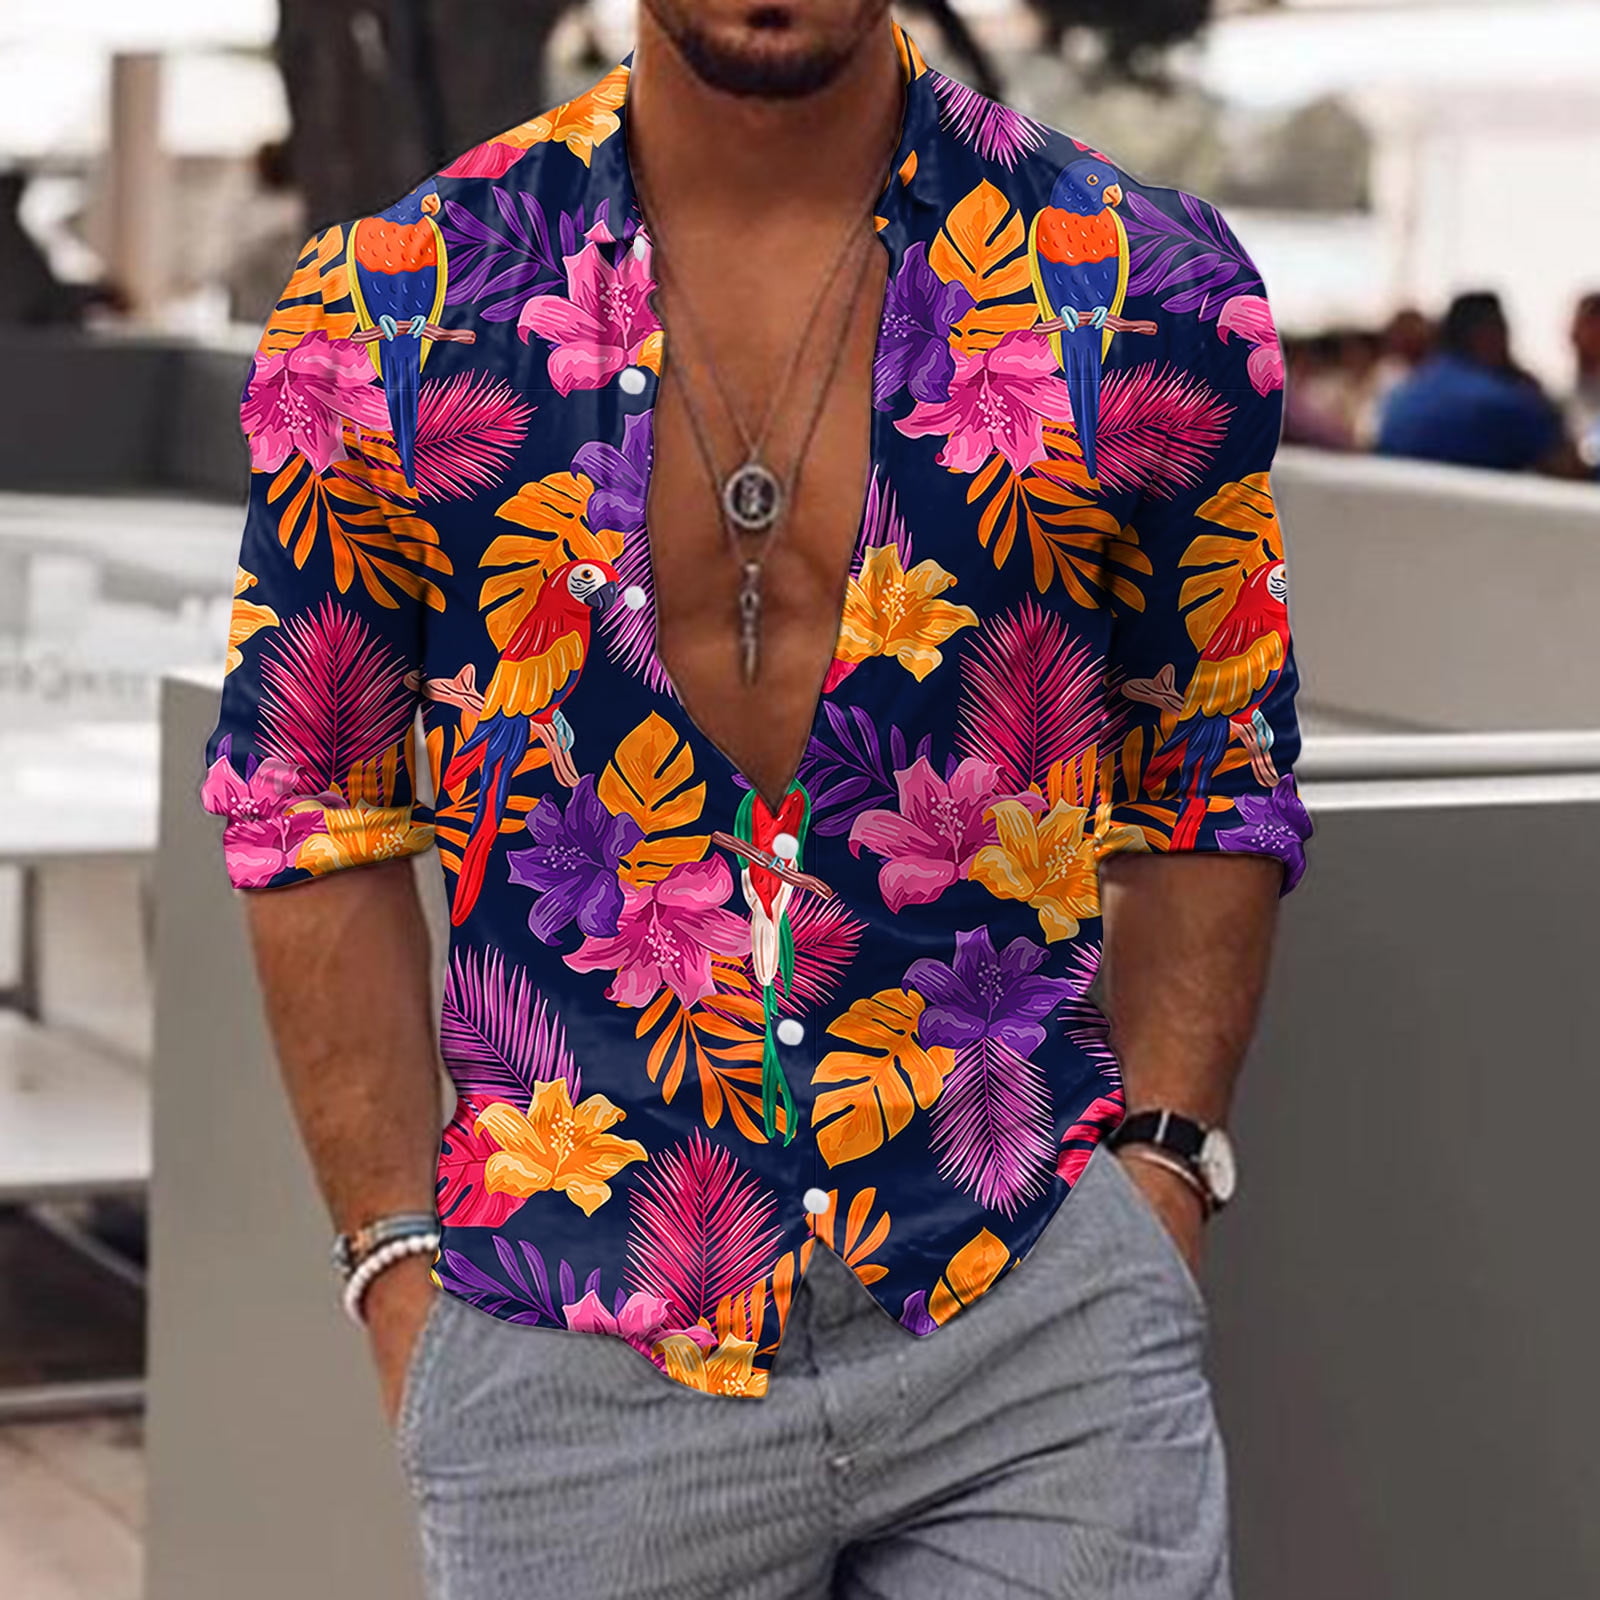 TOWED22 Mens Beach Hawaiian Shirt Short Sleeves Printed Button Summer Beach Shirts Abstract Art Pattern Short-Sleeved Shirt Purple,XL - Walmart.com